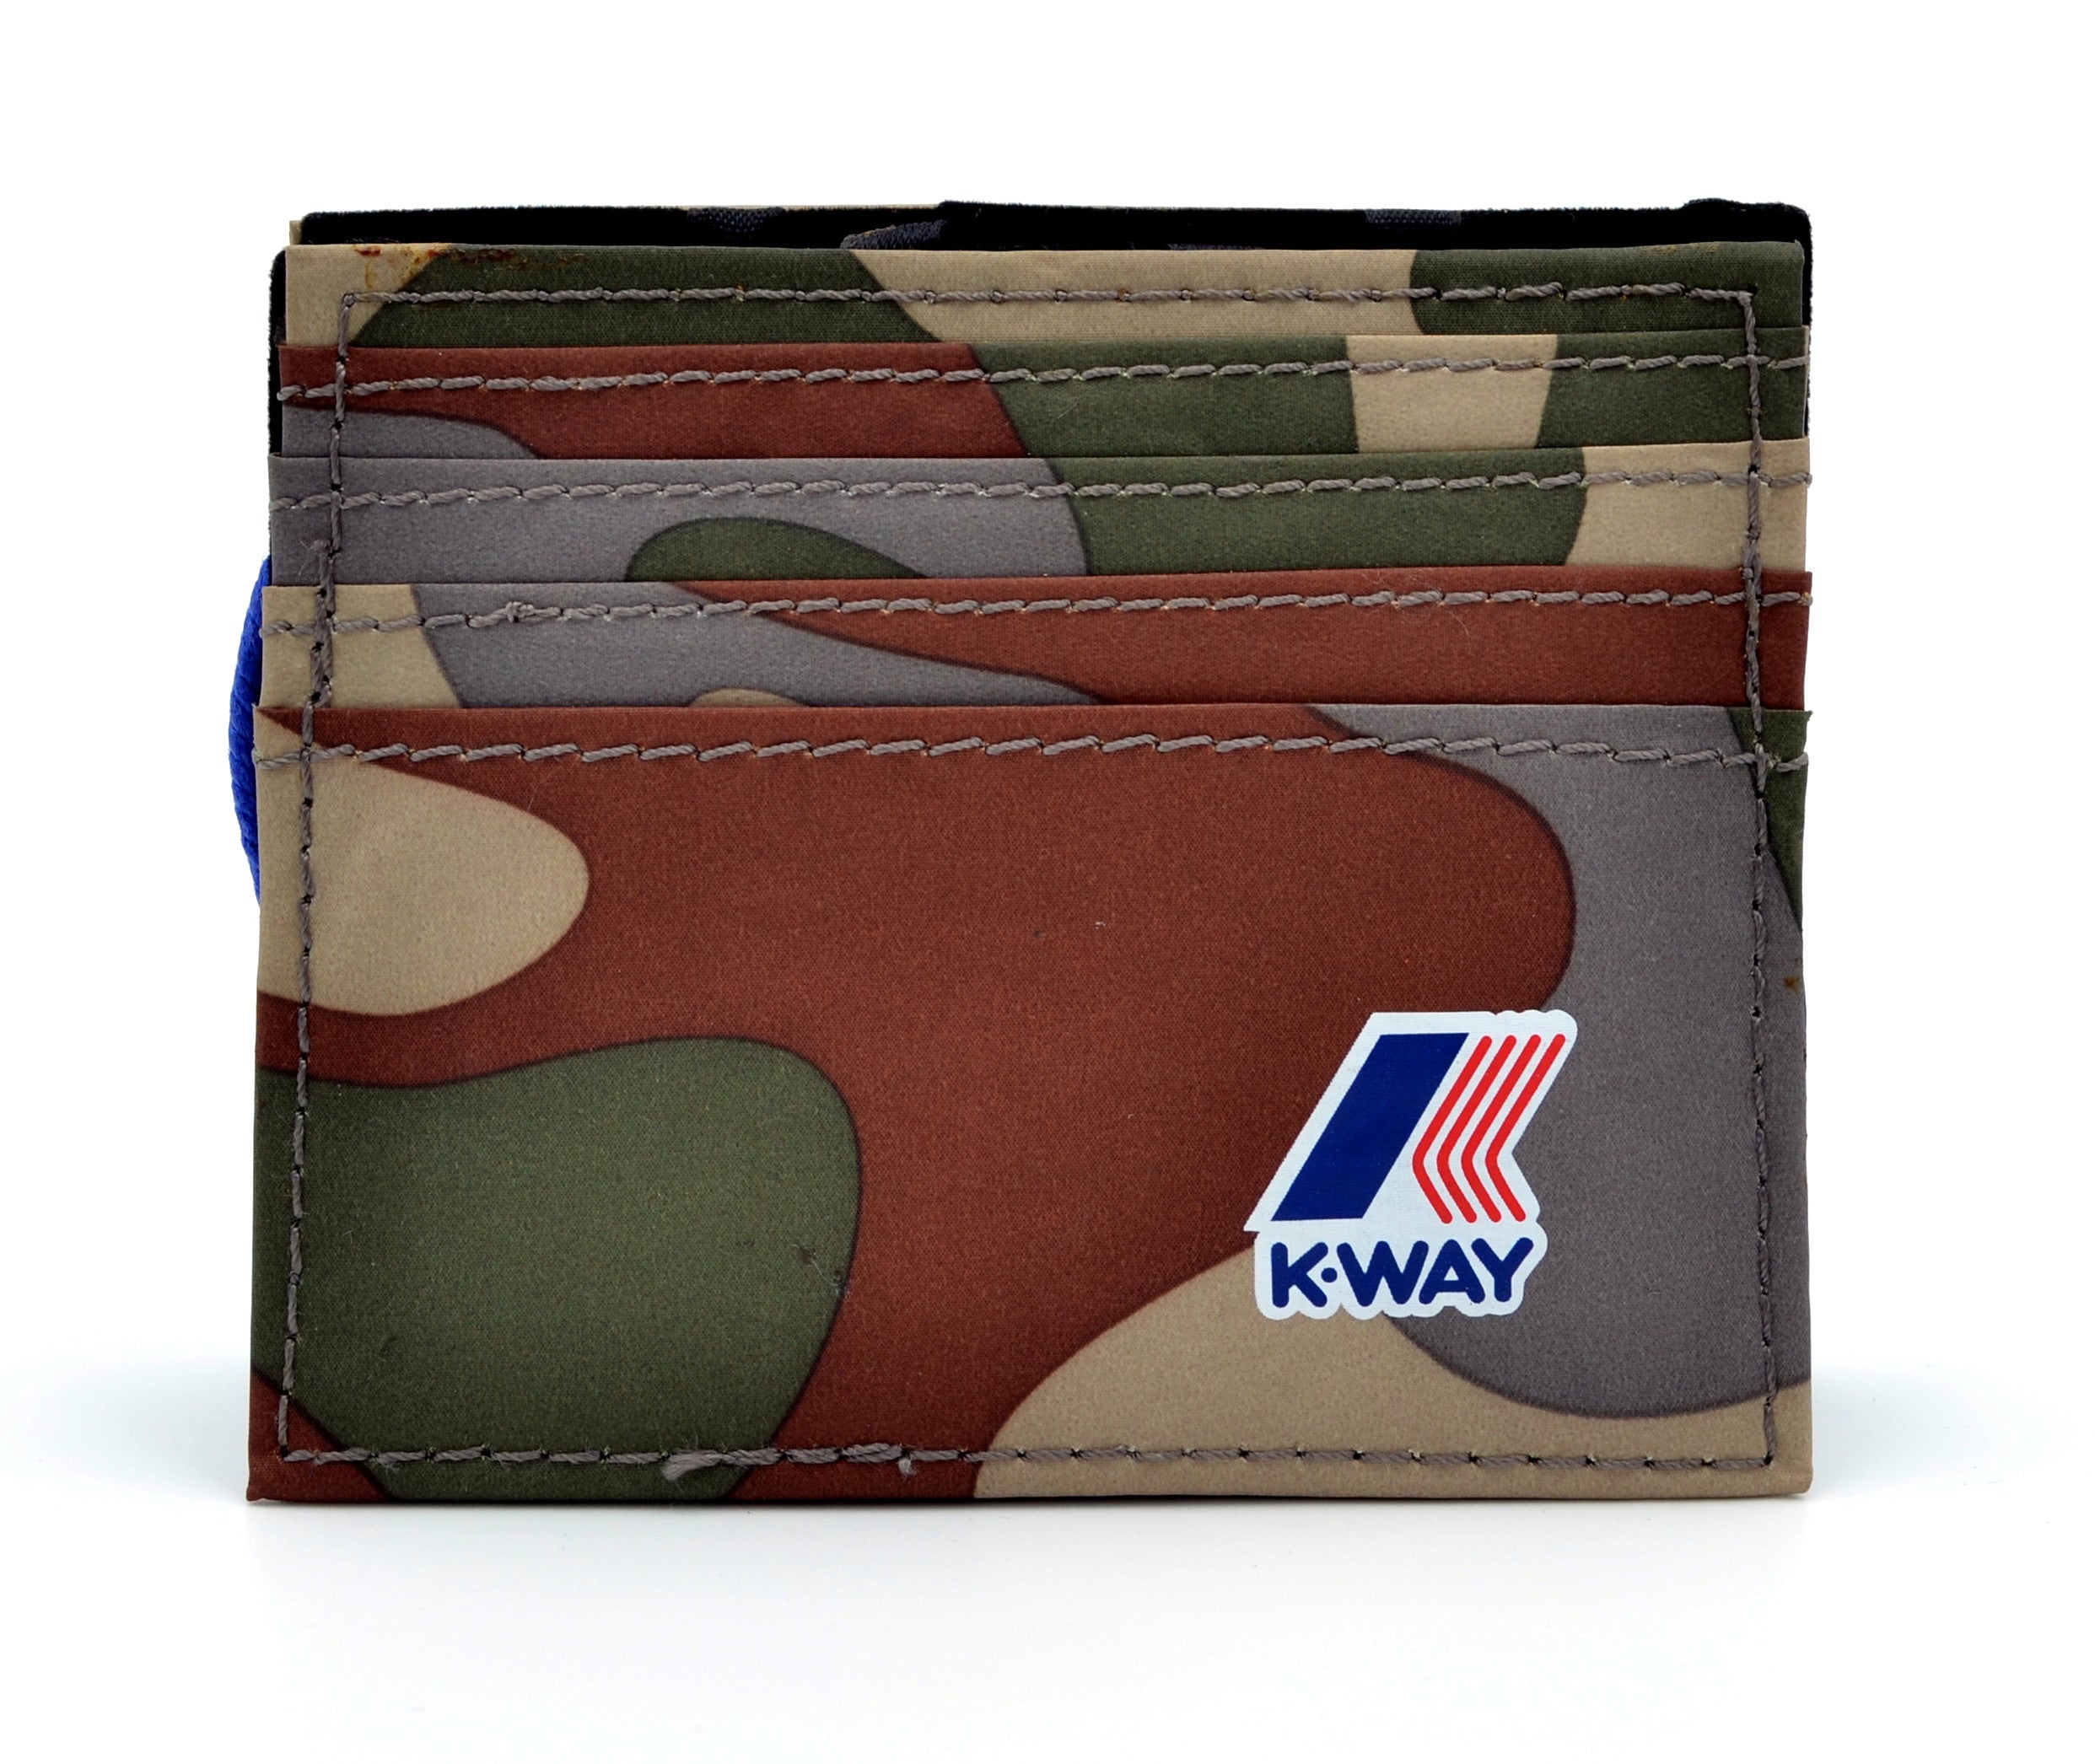 K-way cardholder